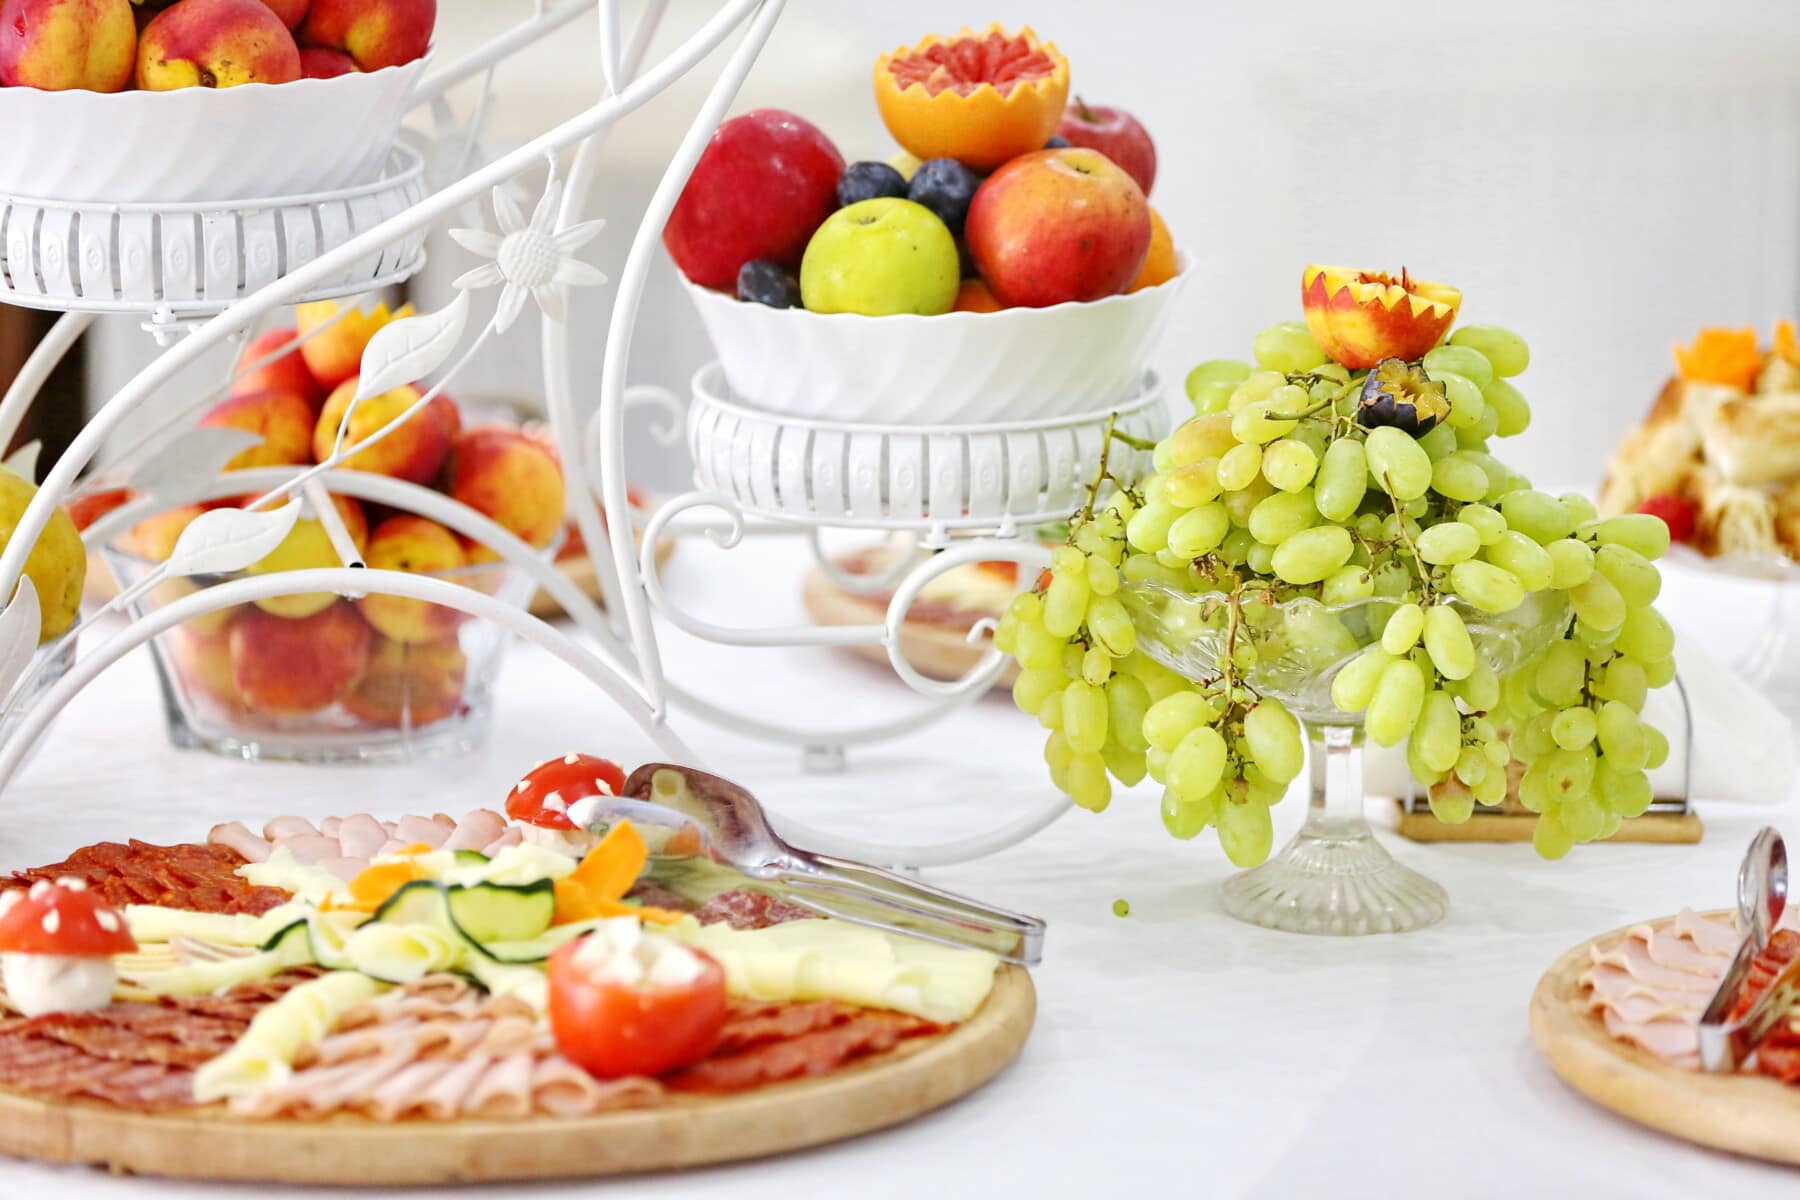 zielony żółty, winogron, owoce, pomarańcze, brzoskwinia, jabłka, salami, Kiełbasa, śniadanie w formie bufetu, eleganckie